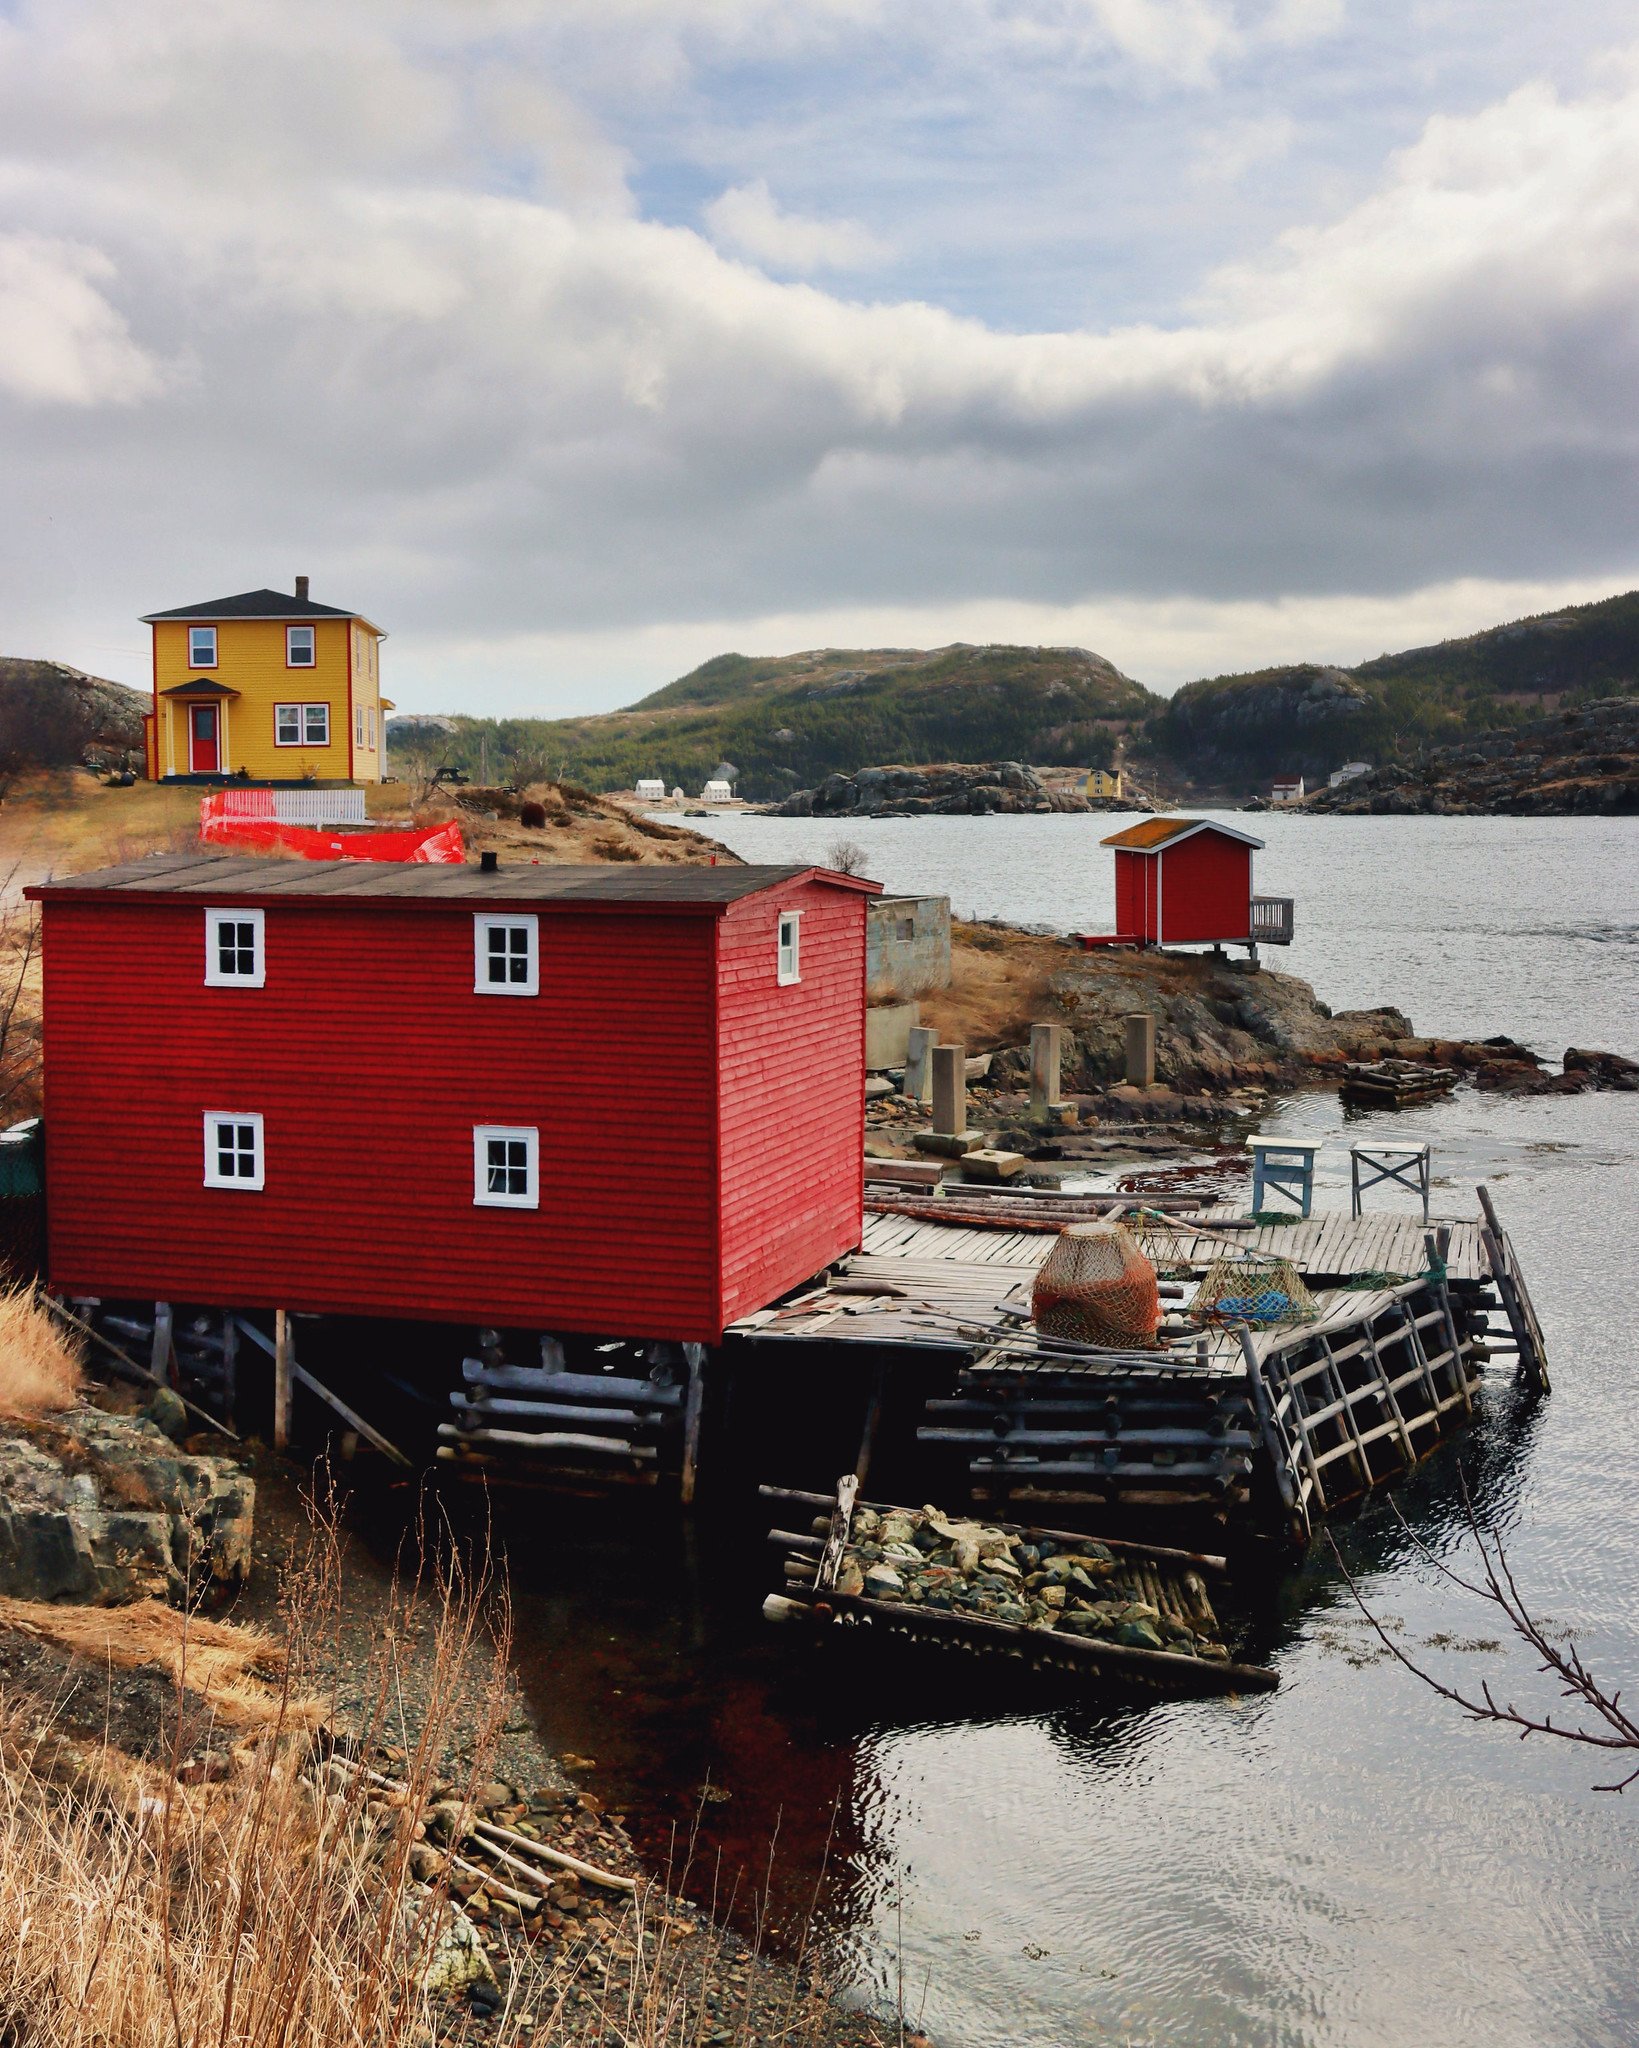 Salvage, Newfoundland and Labrador